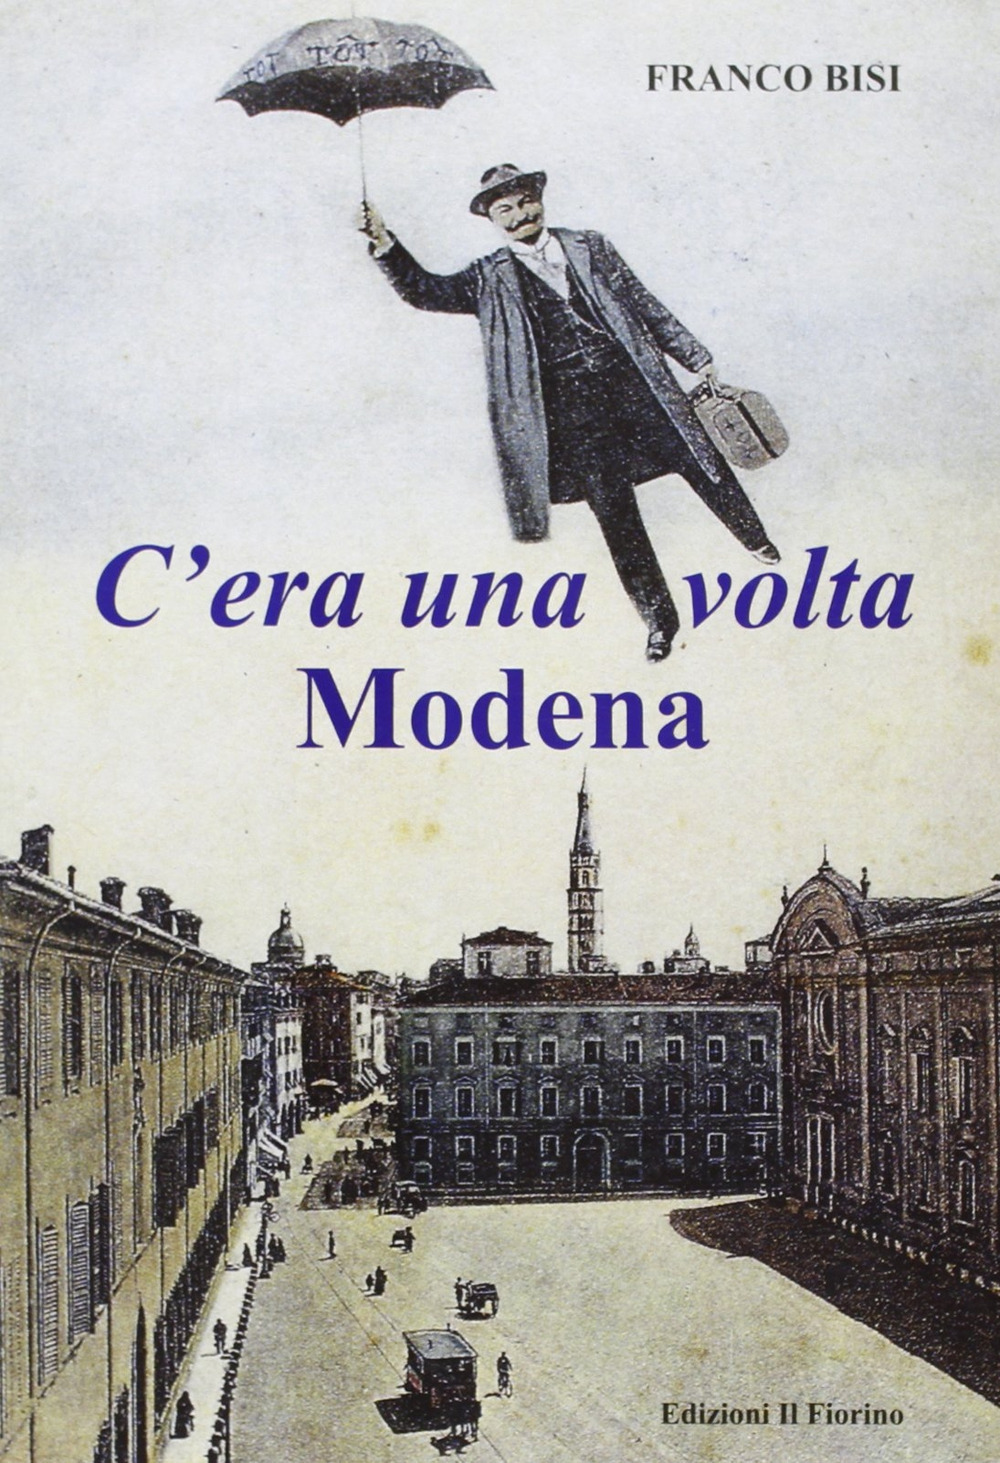 C'era una volta Modena